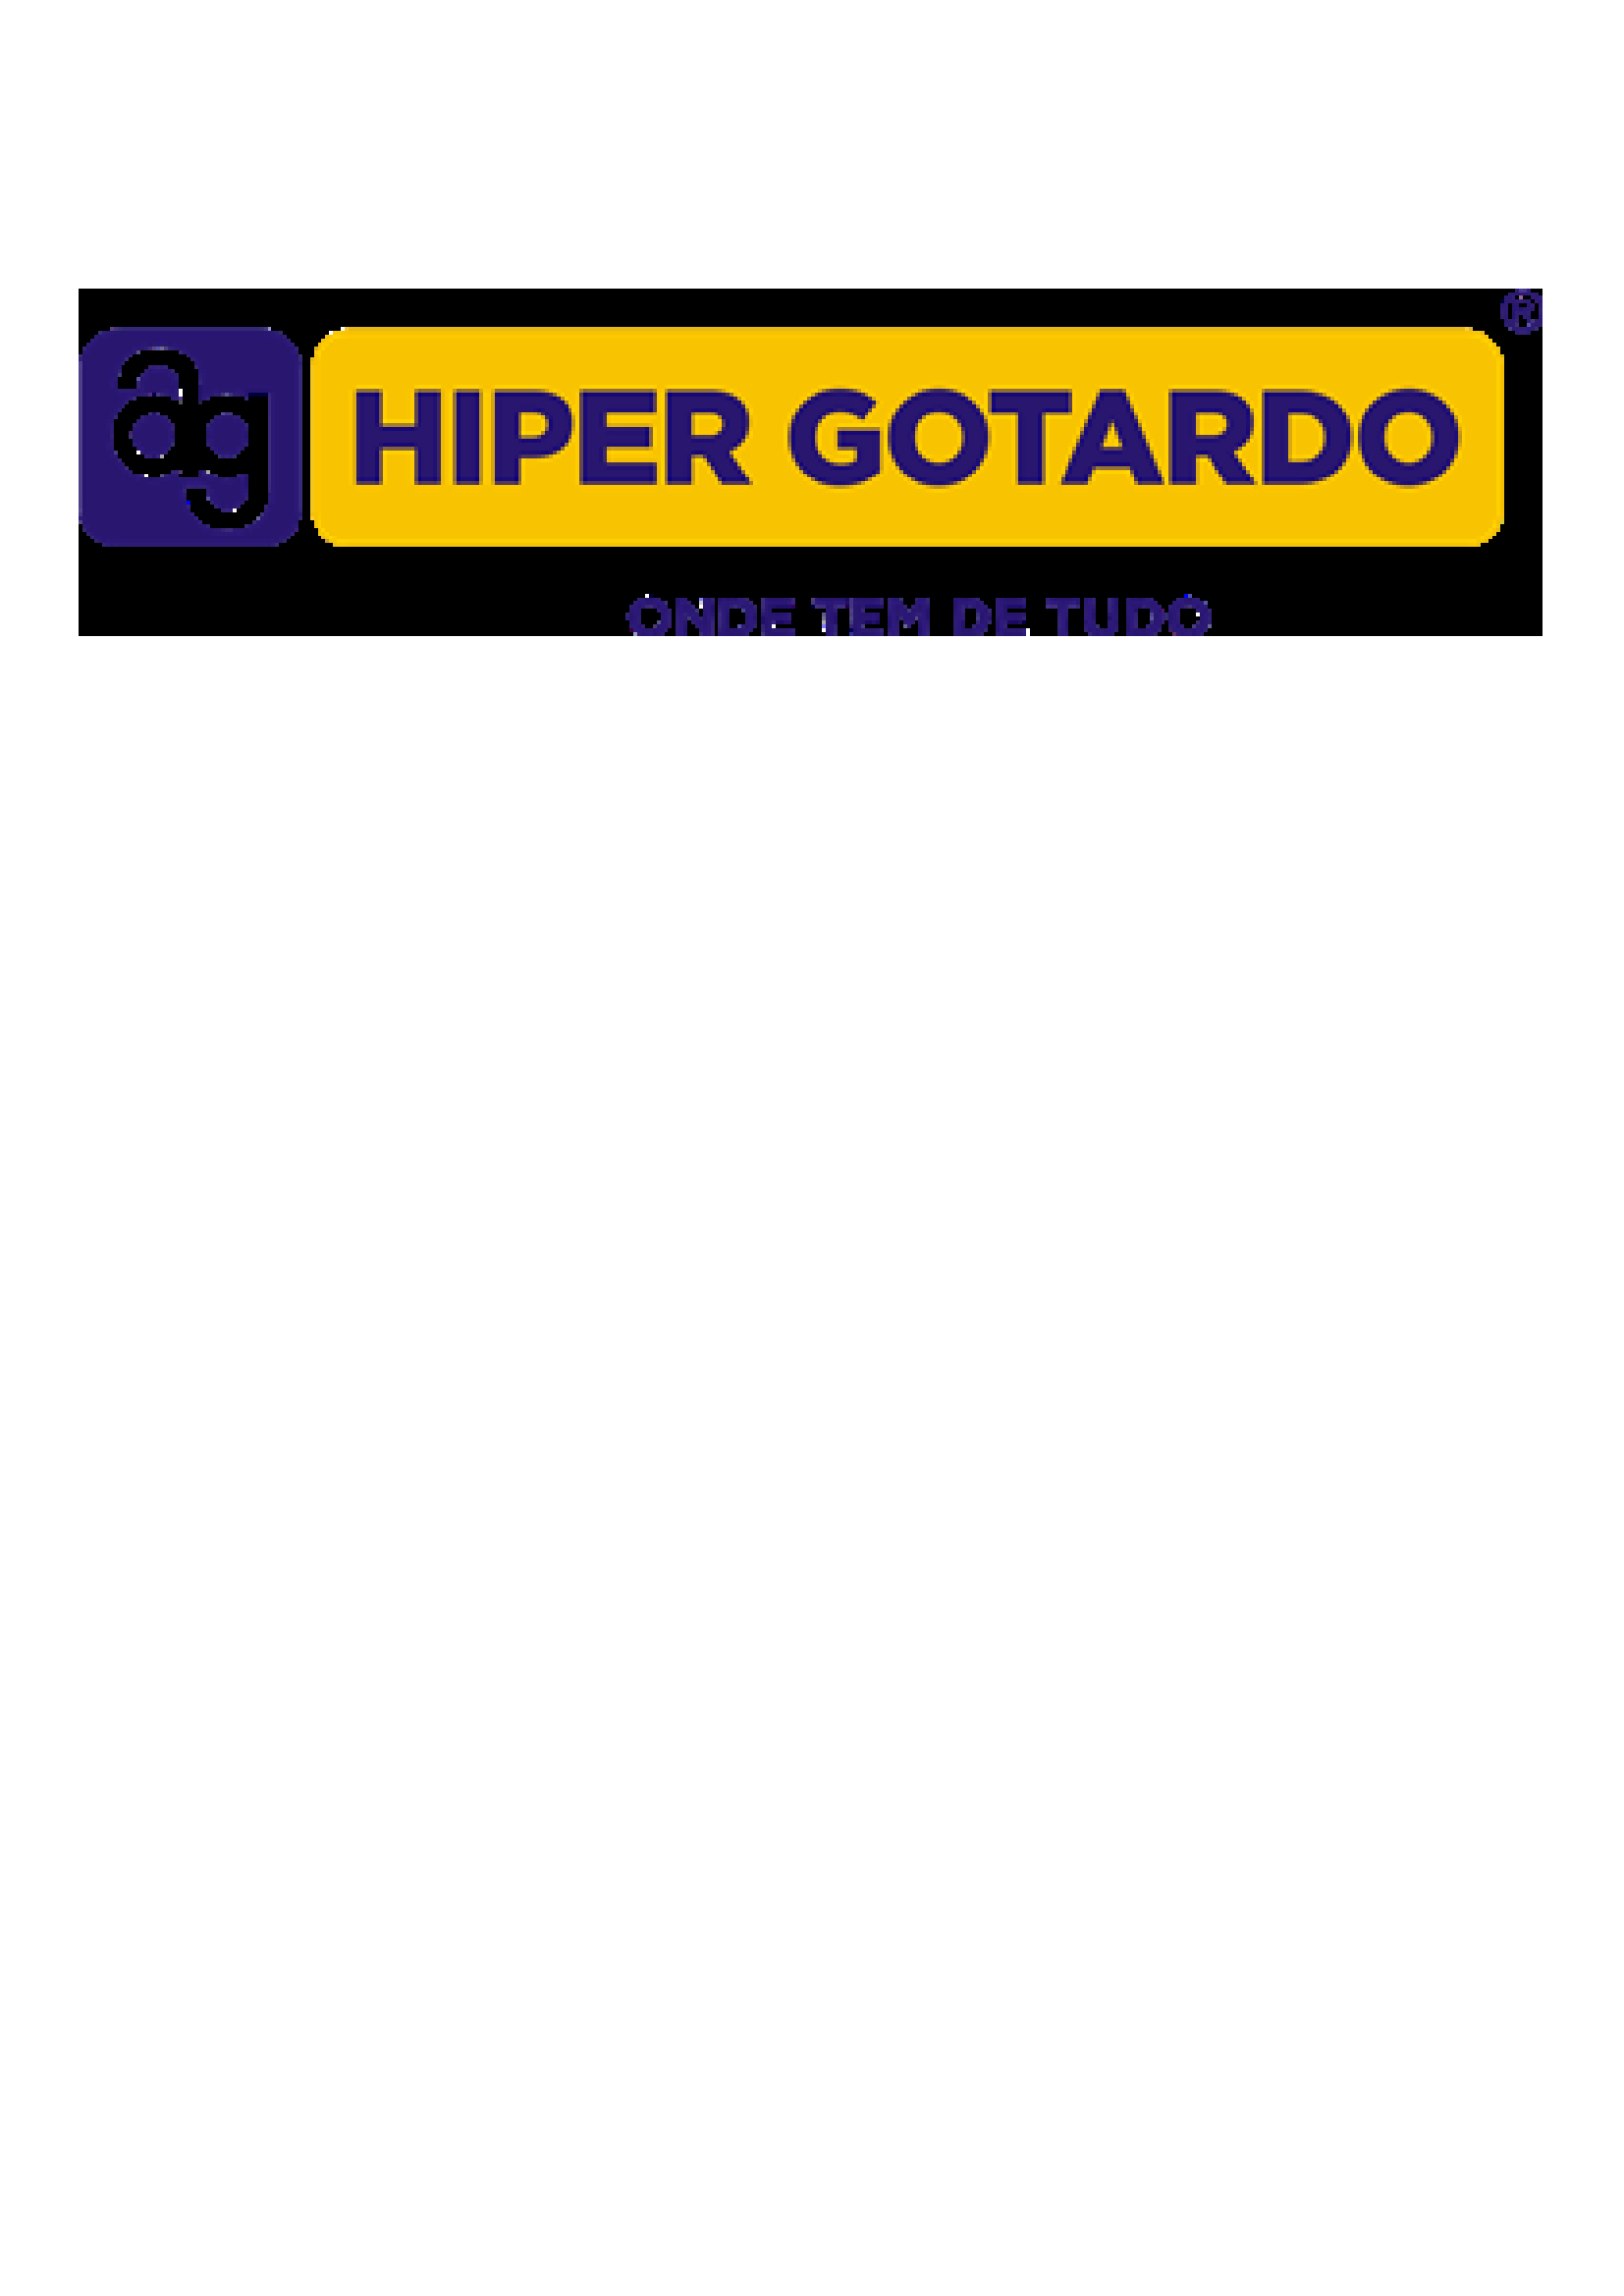 HIPER GOTARDO 